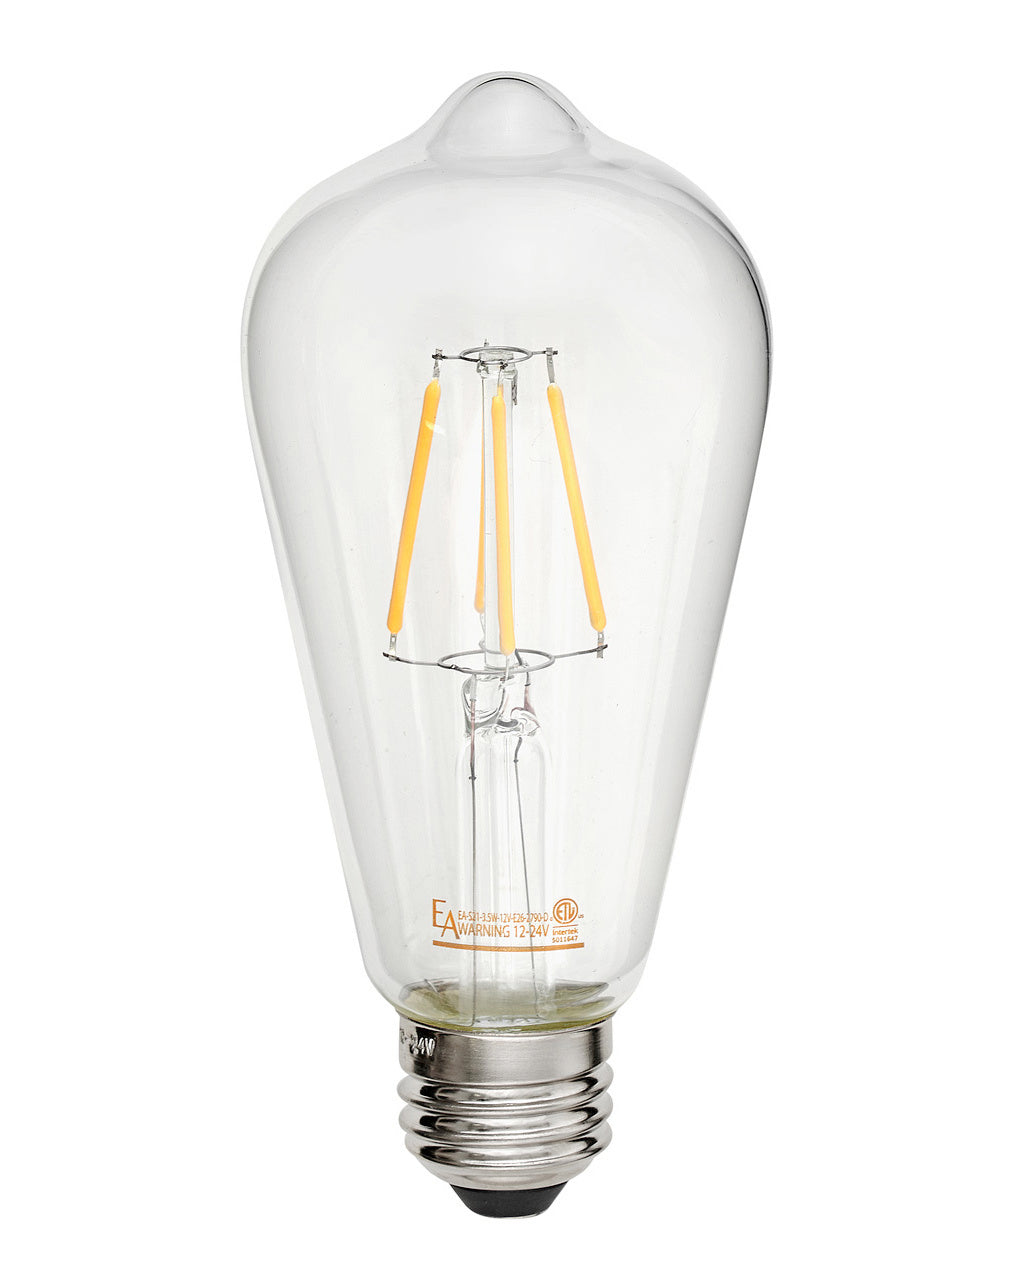 Hinkley - E26LED12V - Lamp - Bulb